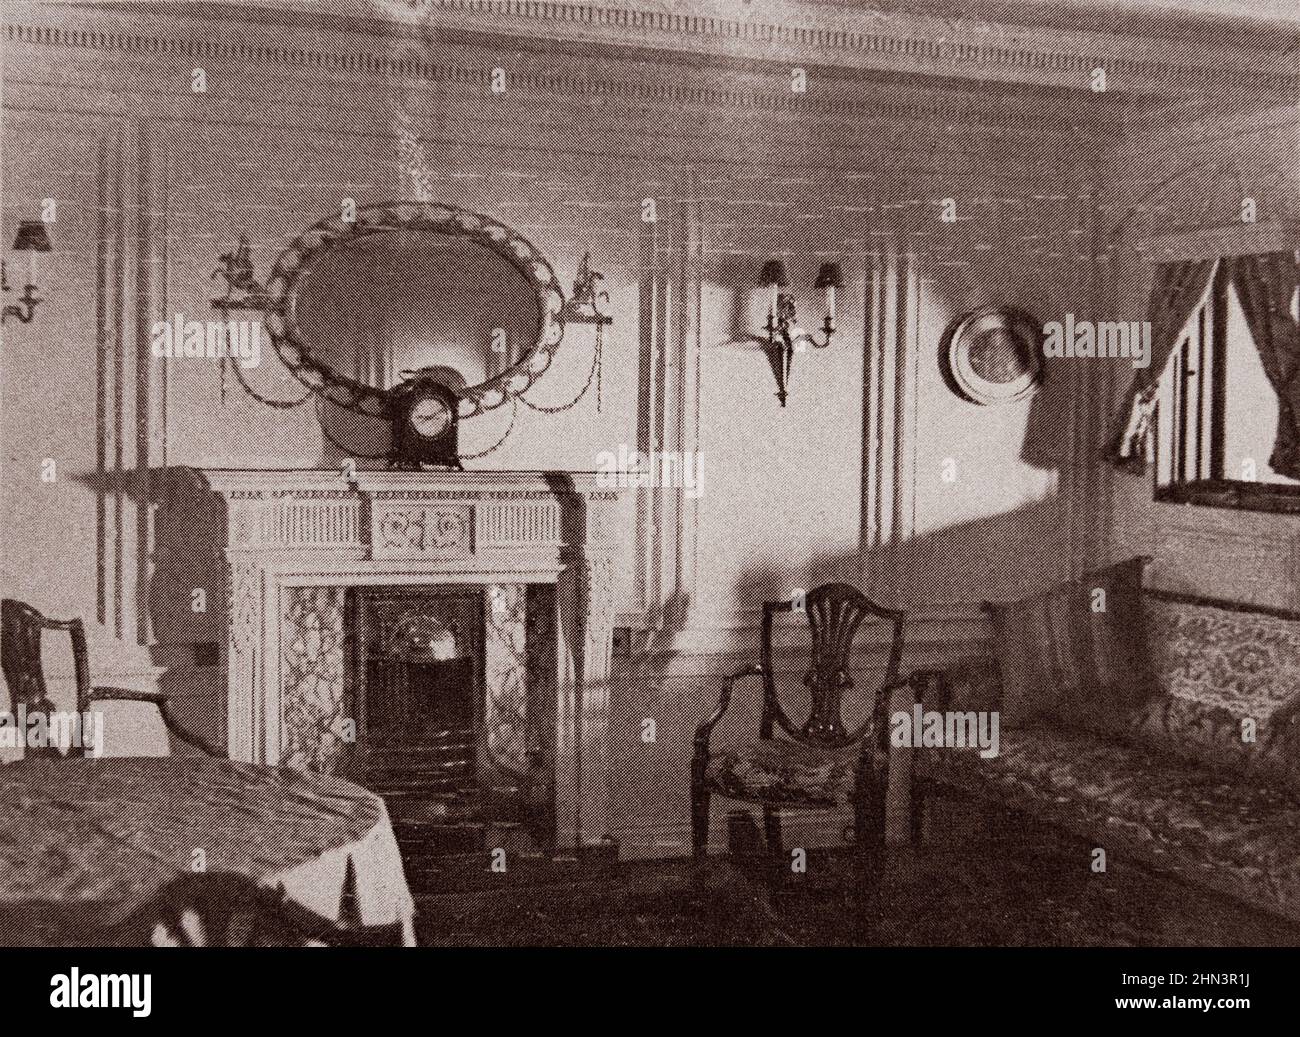 Foto vintage del interior del forro Titanic: El salón. 1912 Dos habitaciones (el dormitorio y el salón) en un apartamento privado, cuyo costo era de aproximadamente Foto de stock